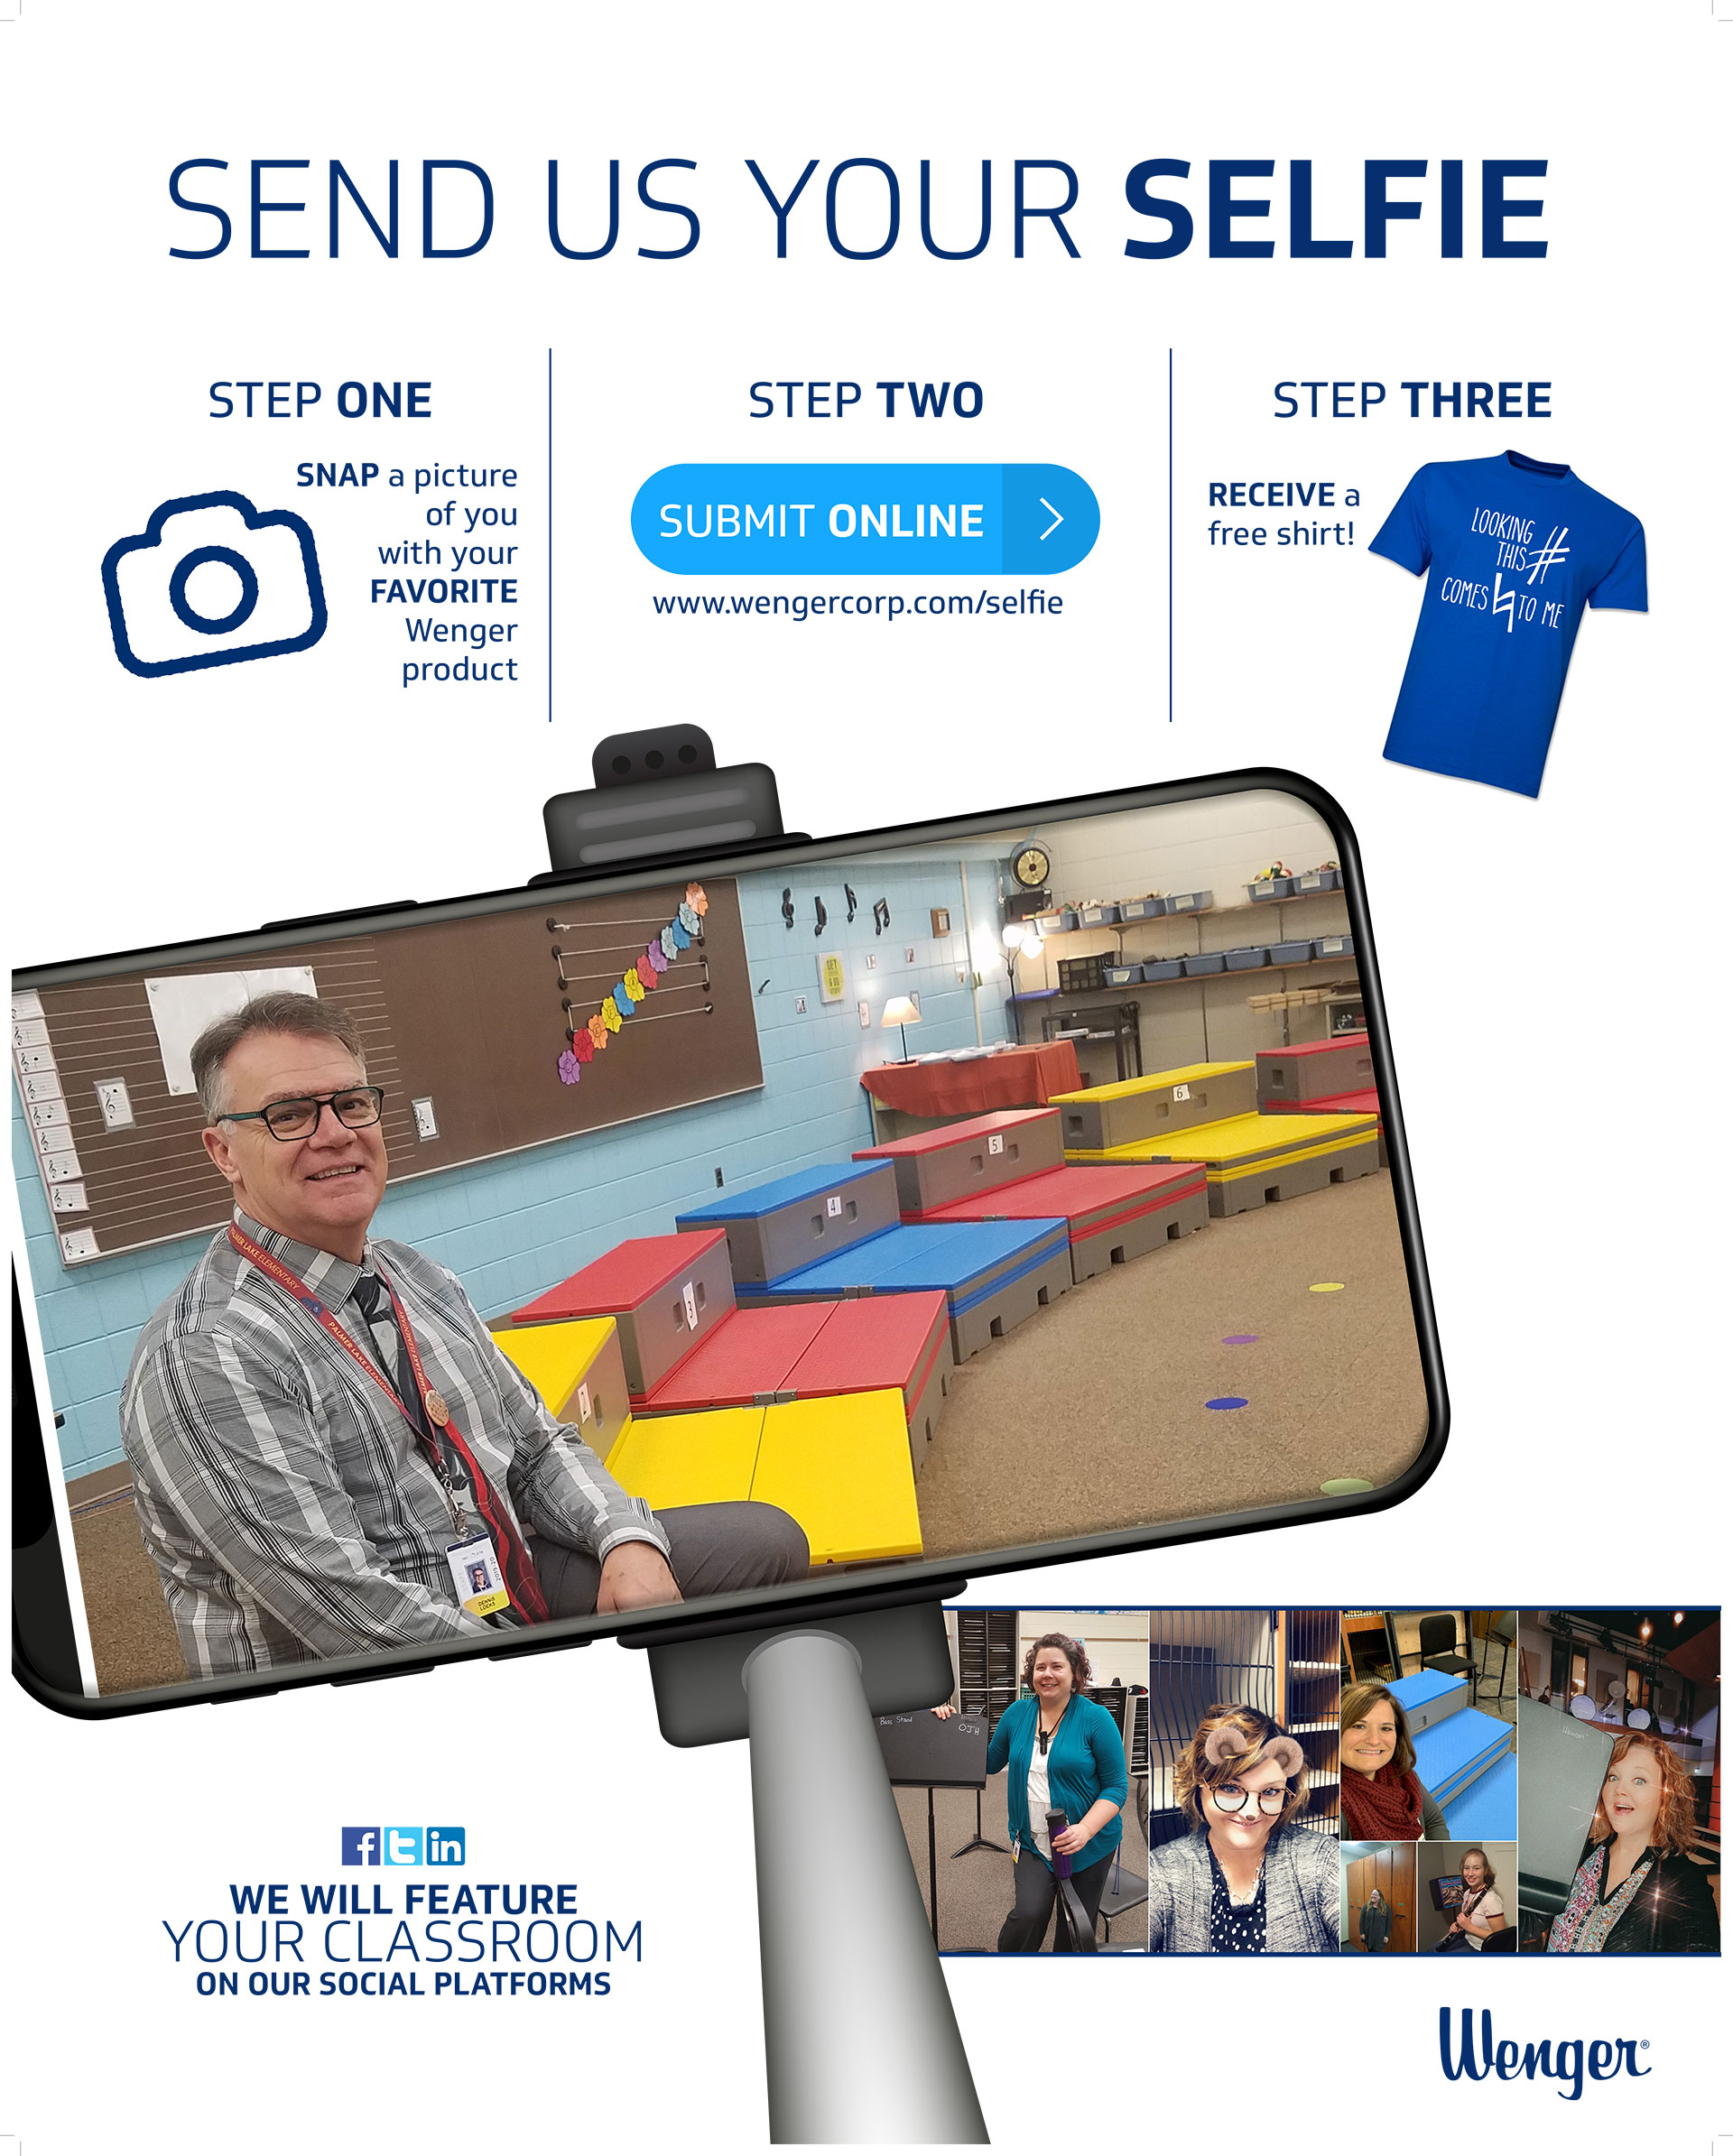 show us your selfie Photo Contest